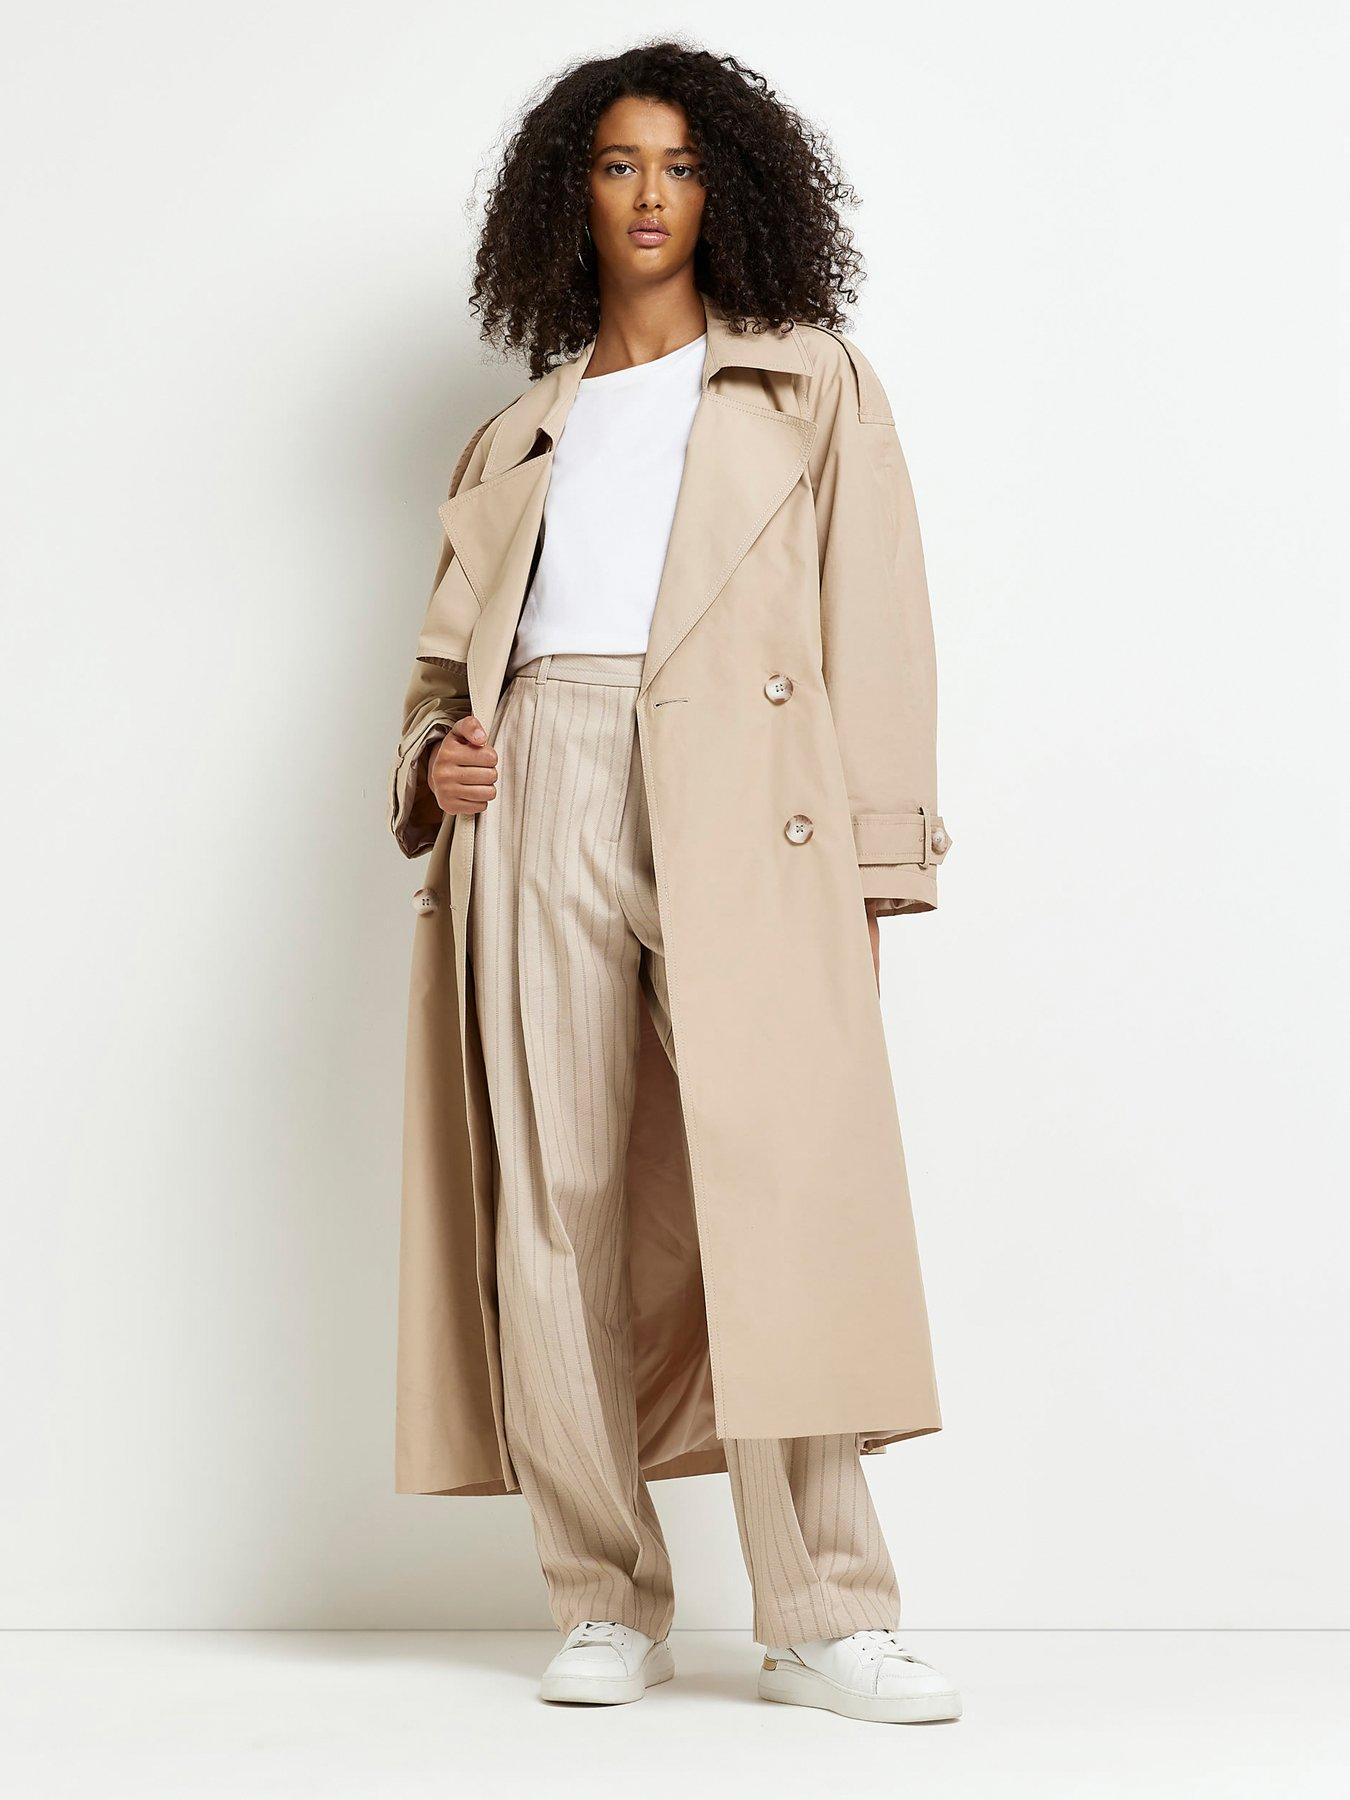 discount 95% WOMEN FASHION Coats Elegant Van-Dos Long coat Black 40                  EU 